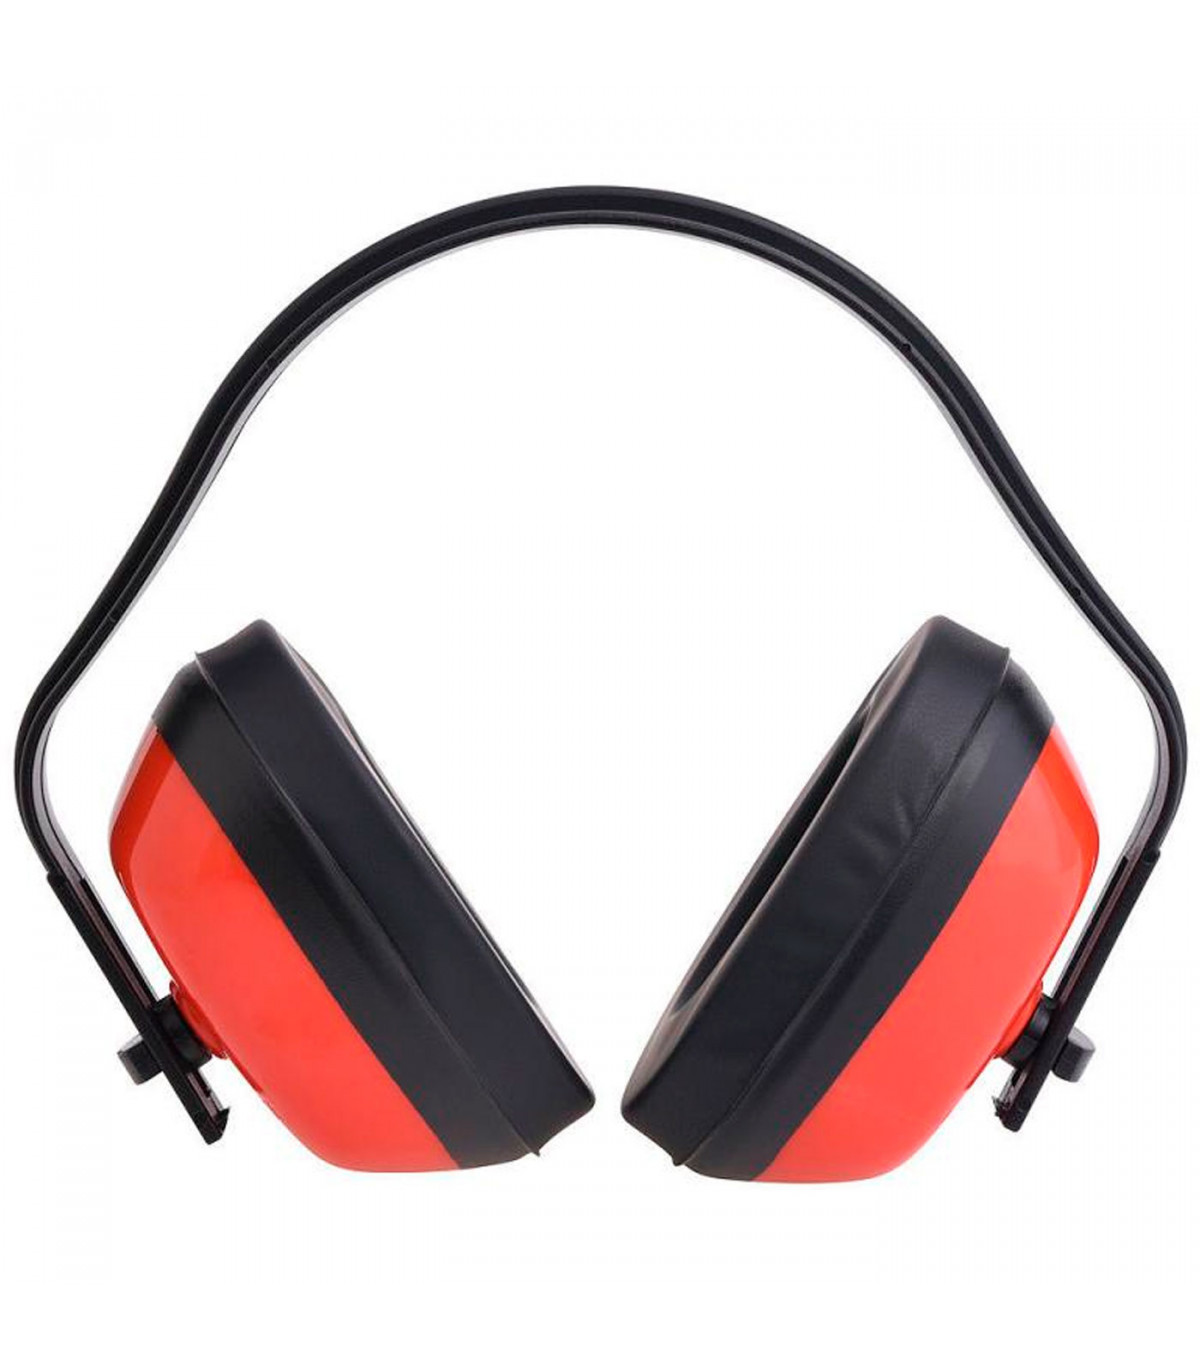 Tradineur - Protector auditivo, cascos, orejeras anti-ruido para proteger  los oídos, aislante de ruido profesional, insonorizaci